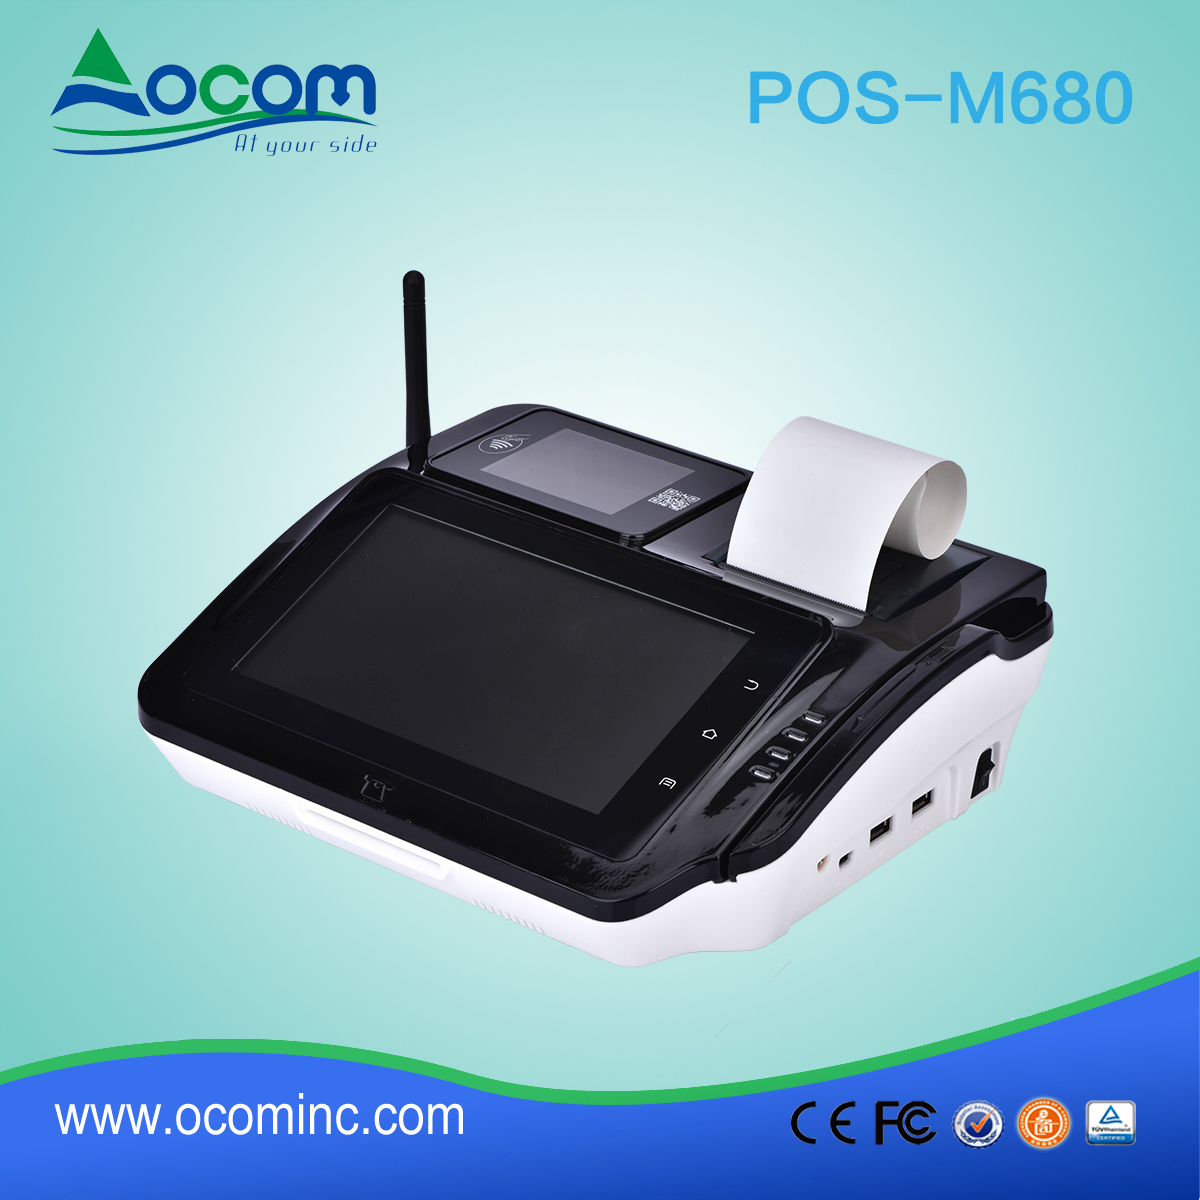 POS-M680 POS mit Smart Card Reader und Fingerprint Reader